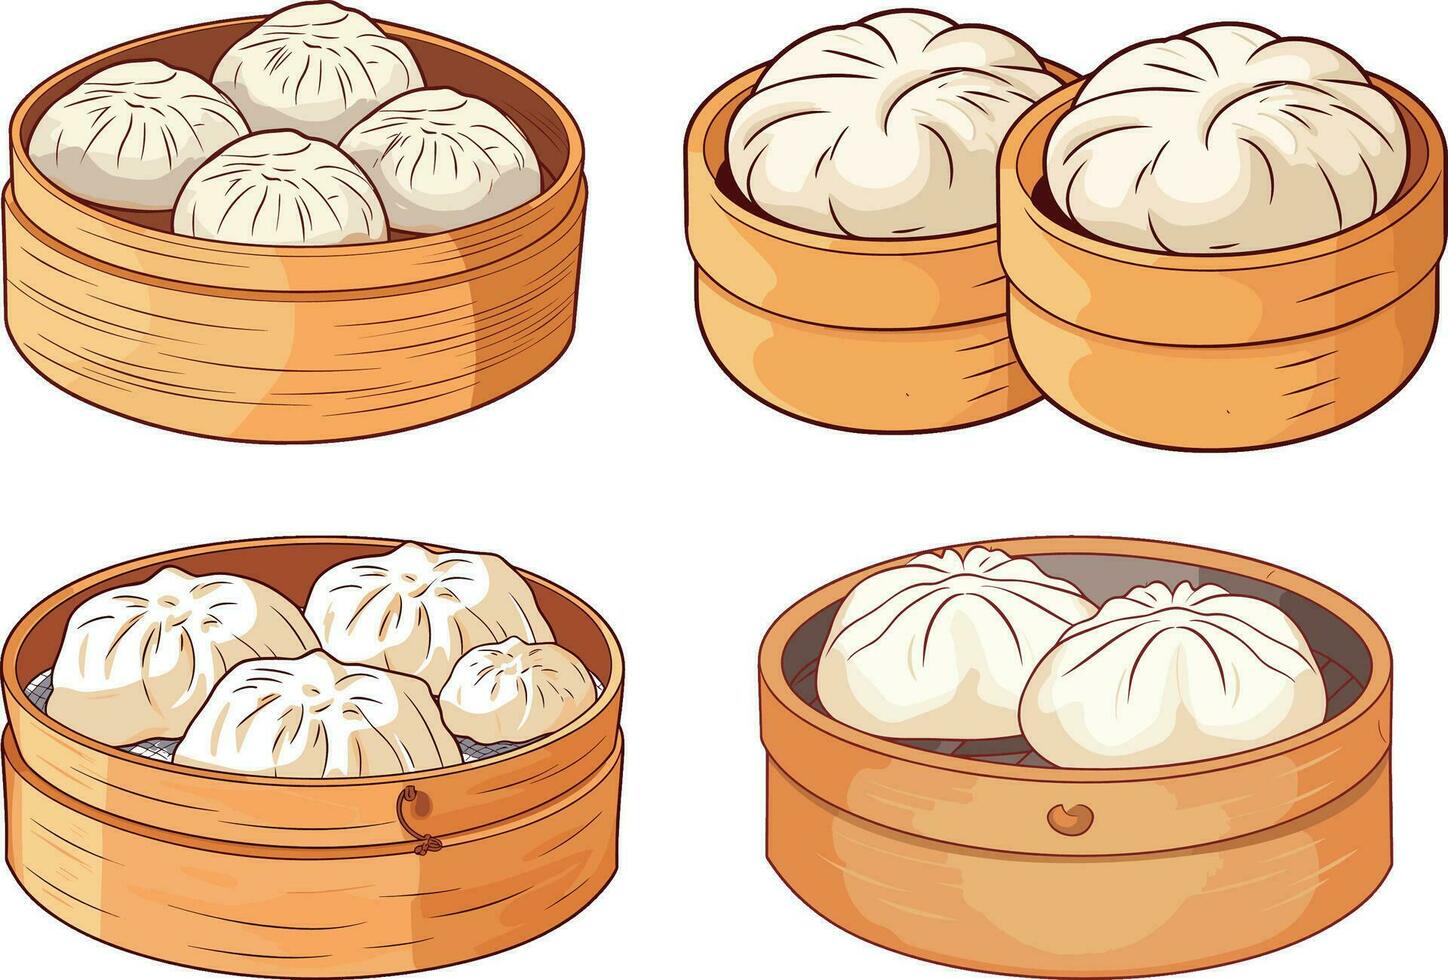 Chinese traditioneel voedsel gekleurd baozi broodjes vector